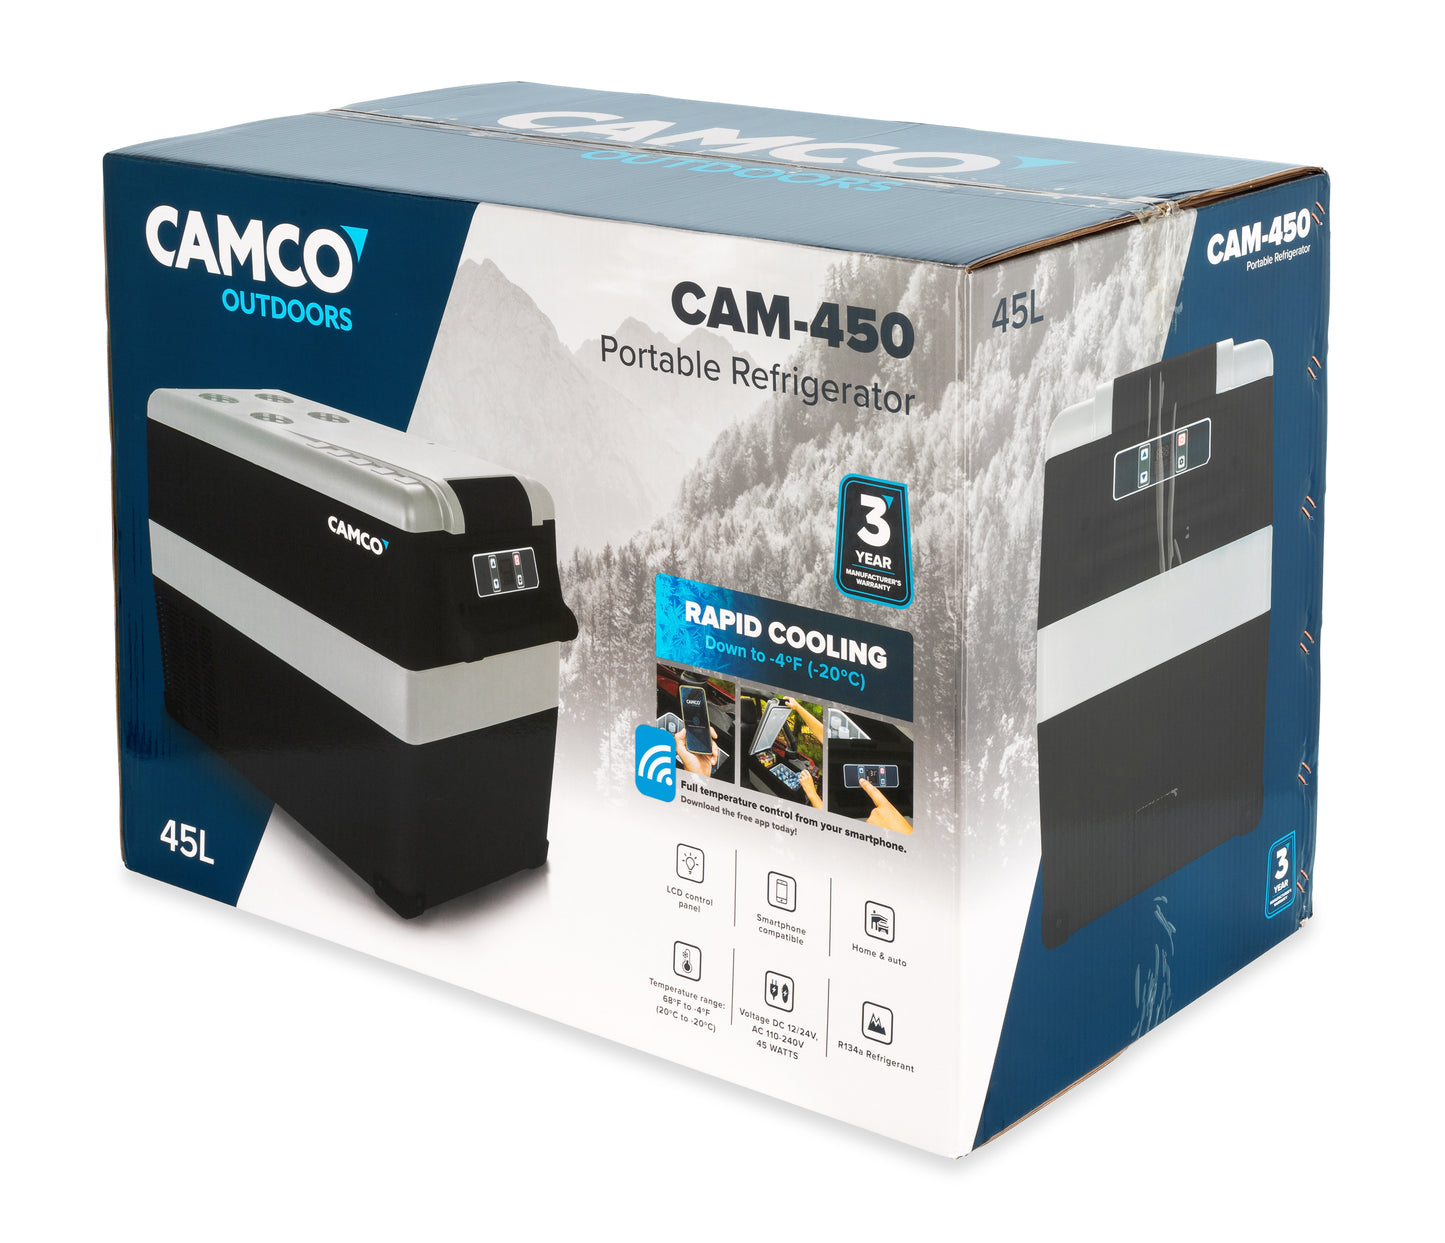 Camco Outdoors CAM-450 Portable Refrigerator - 45 Liter